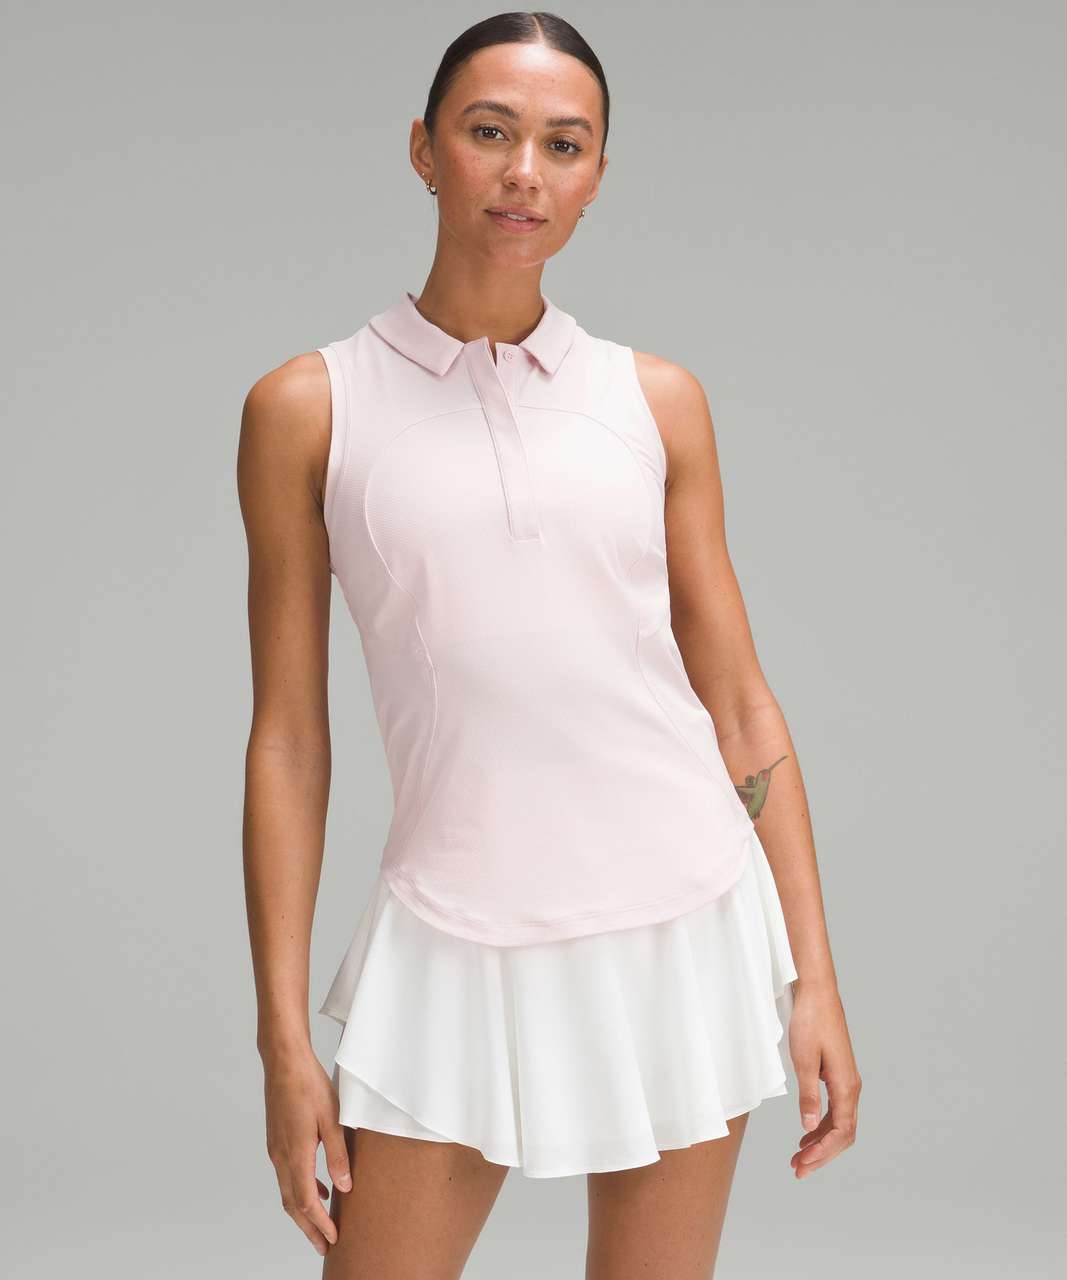 Lululemon Quick-Dry Sleeveless Polo Shirt - Flush Pink